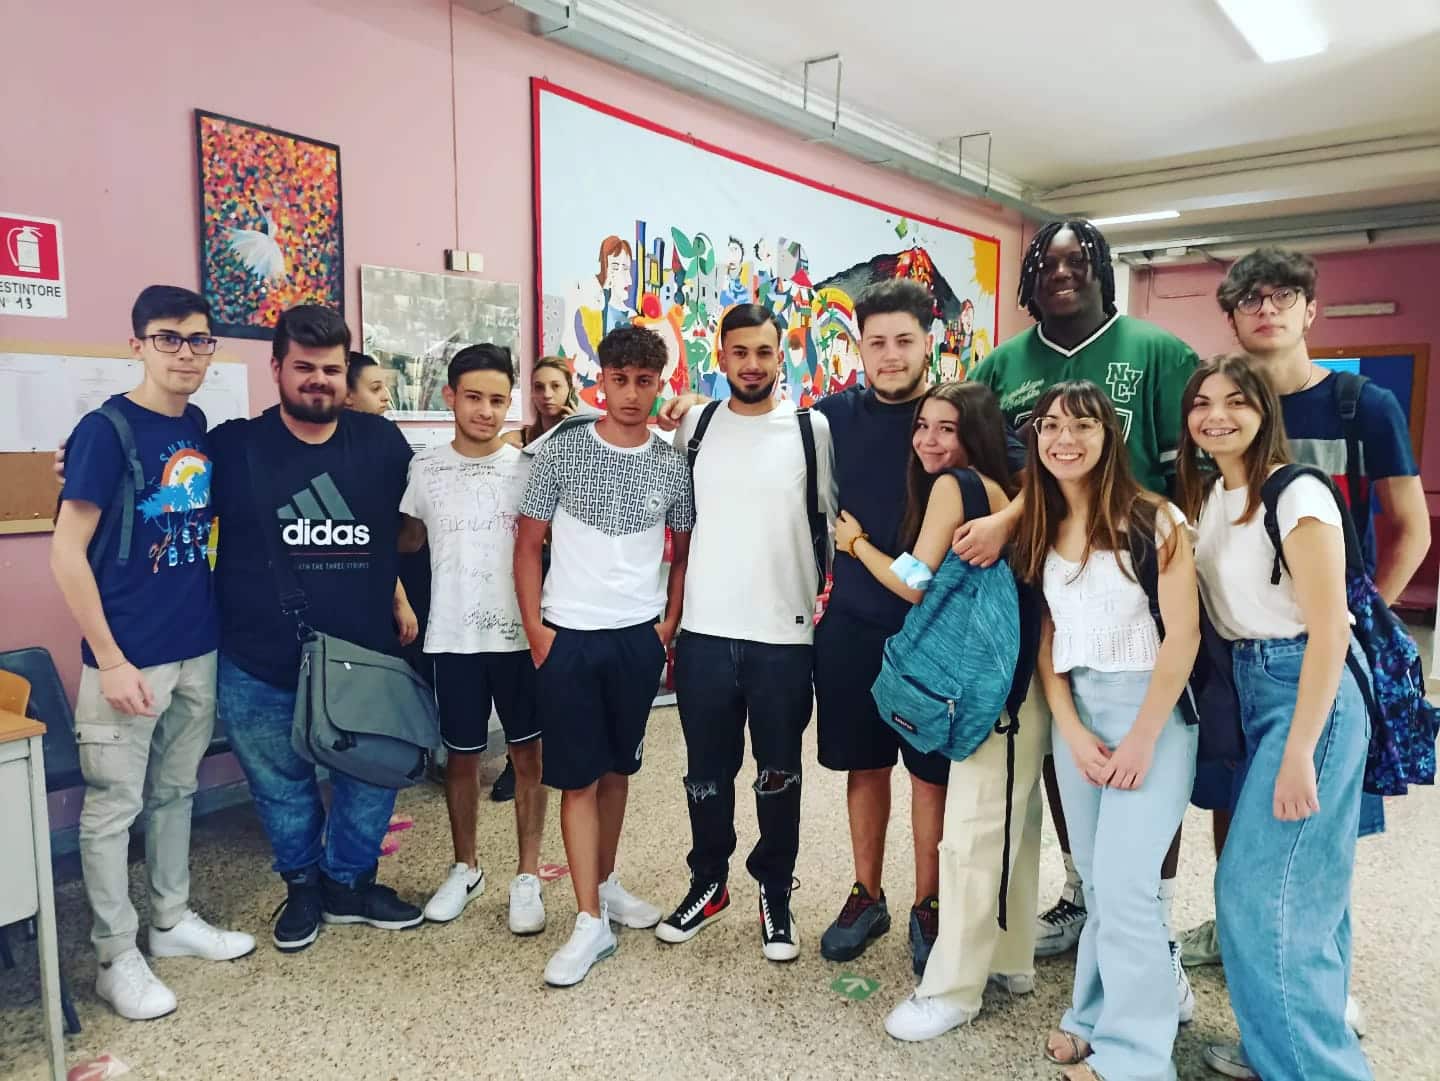 Le eccellenze del Liceo Musicale “Angelo Musco” di Catania